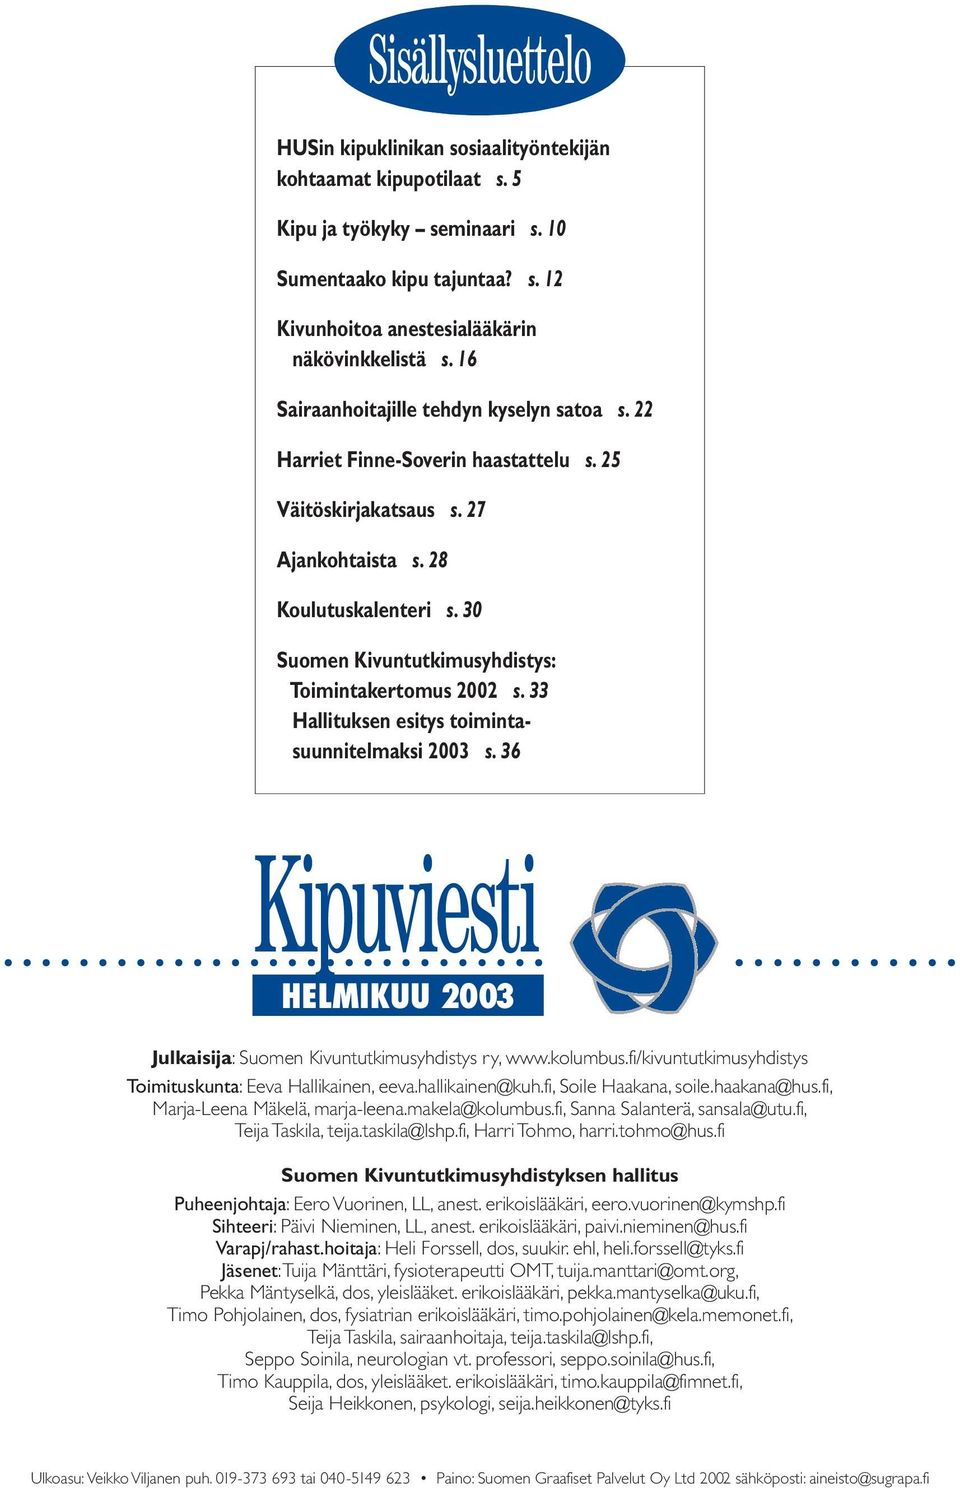 30 Suomen Kivuntutkimusyhdistys: Toimintakertomus 2002 s. 33 Hallituksen esitys toimintasuunnitelmaksi 2003 s. 36 HELMIKUU 2003 Julkaisija: Suomen Kivuntutkimusyhdistys ry, www.kolumbus.